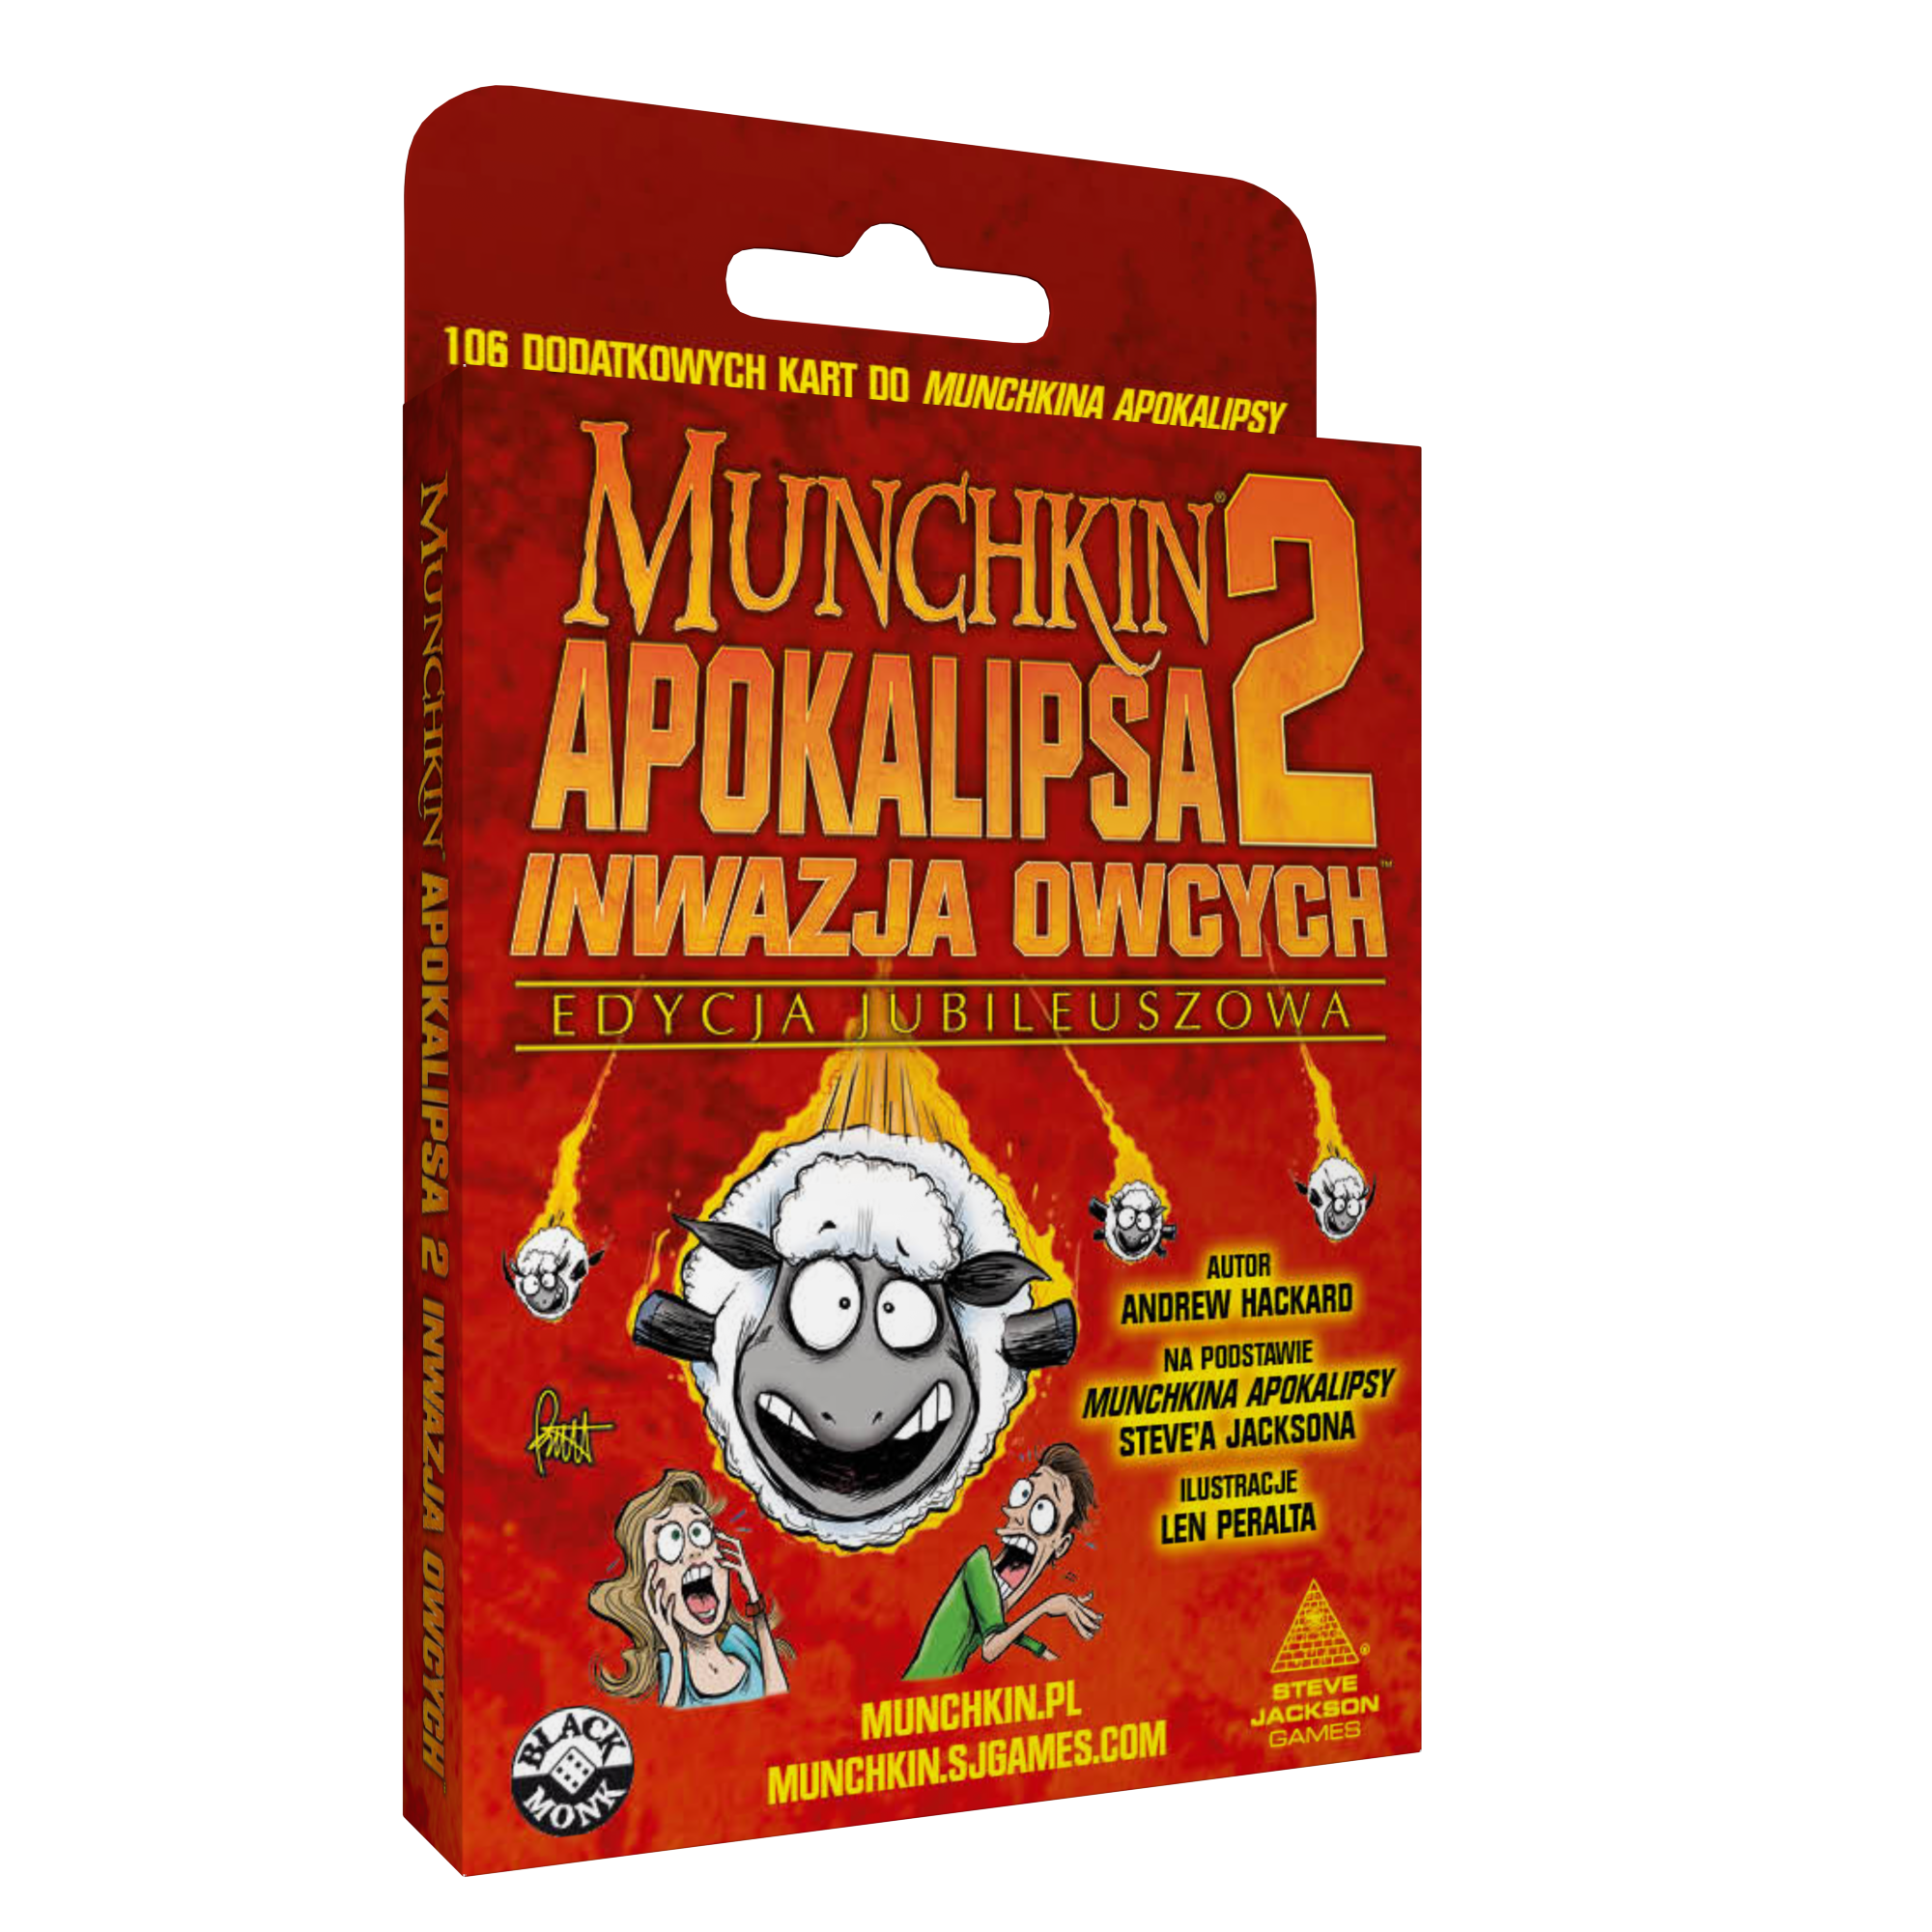 Munchkin Apokalipsa 2: Inwazja Owcych - Edycja jubileuszowa